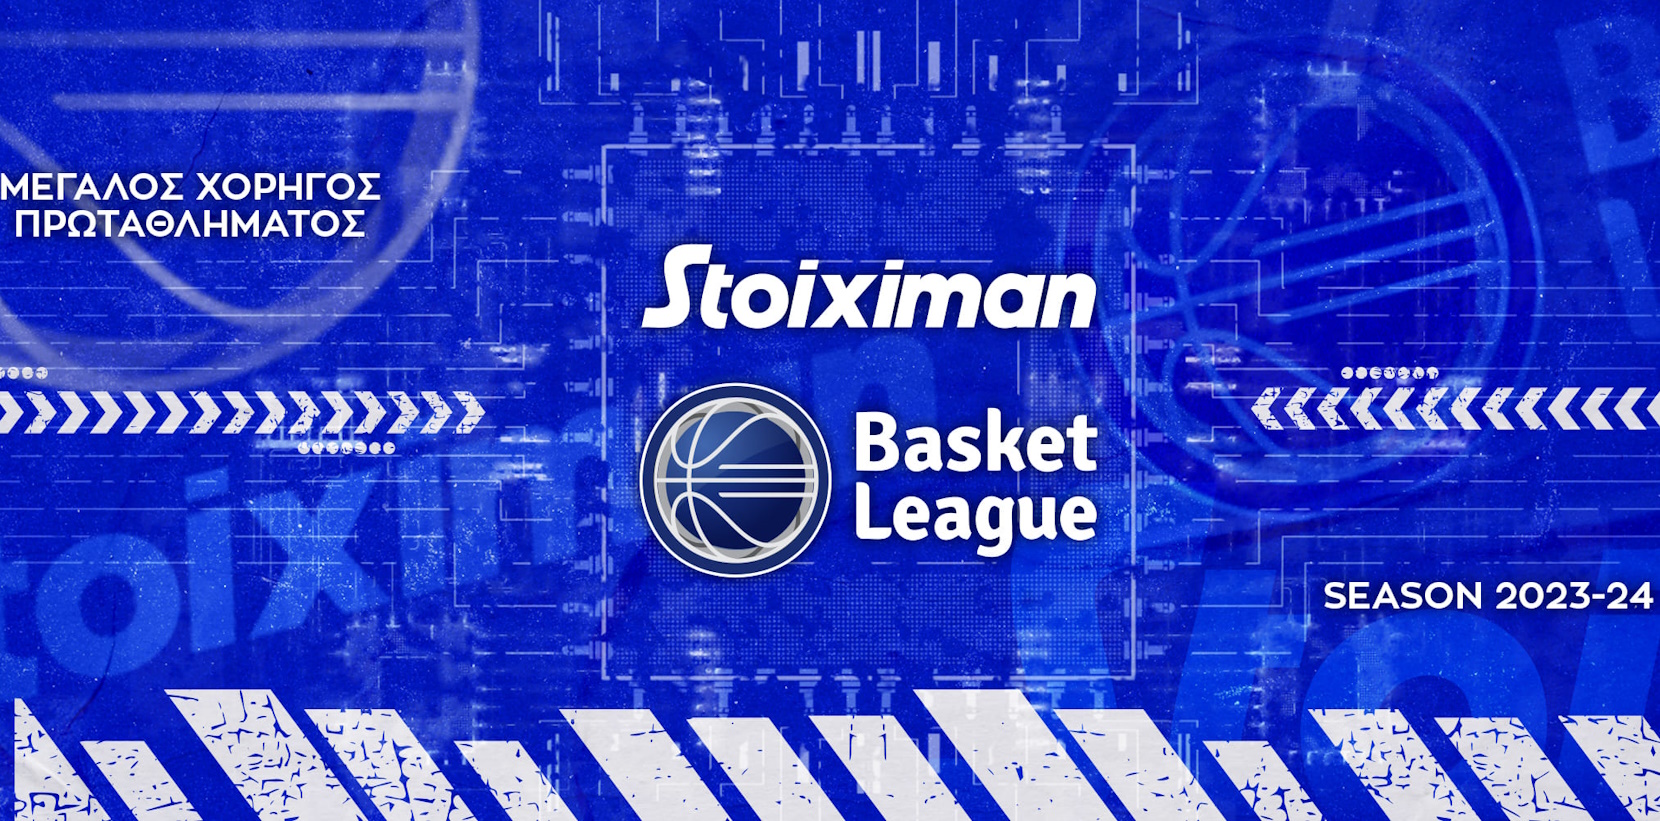 Η Stoiximan επιστρέφει ως Μεγάλος Χορηγός της Basket League